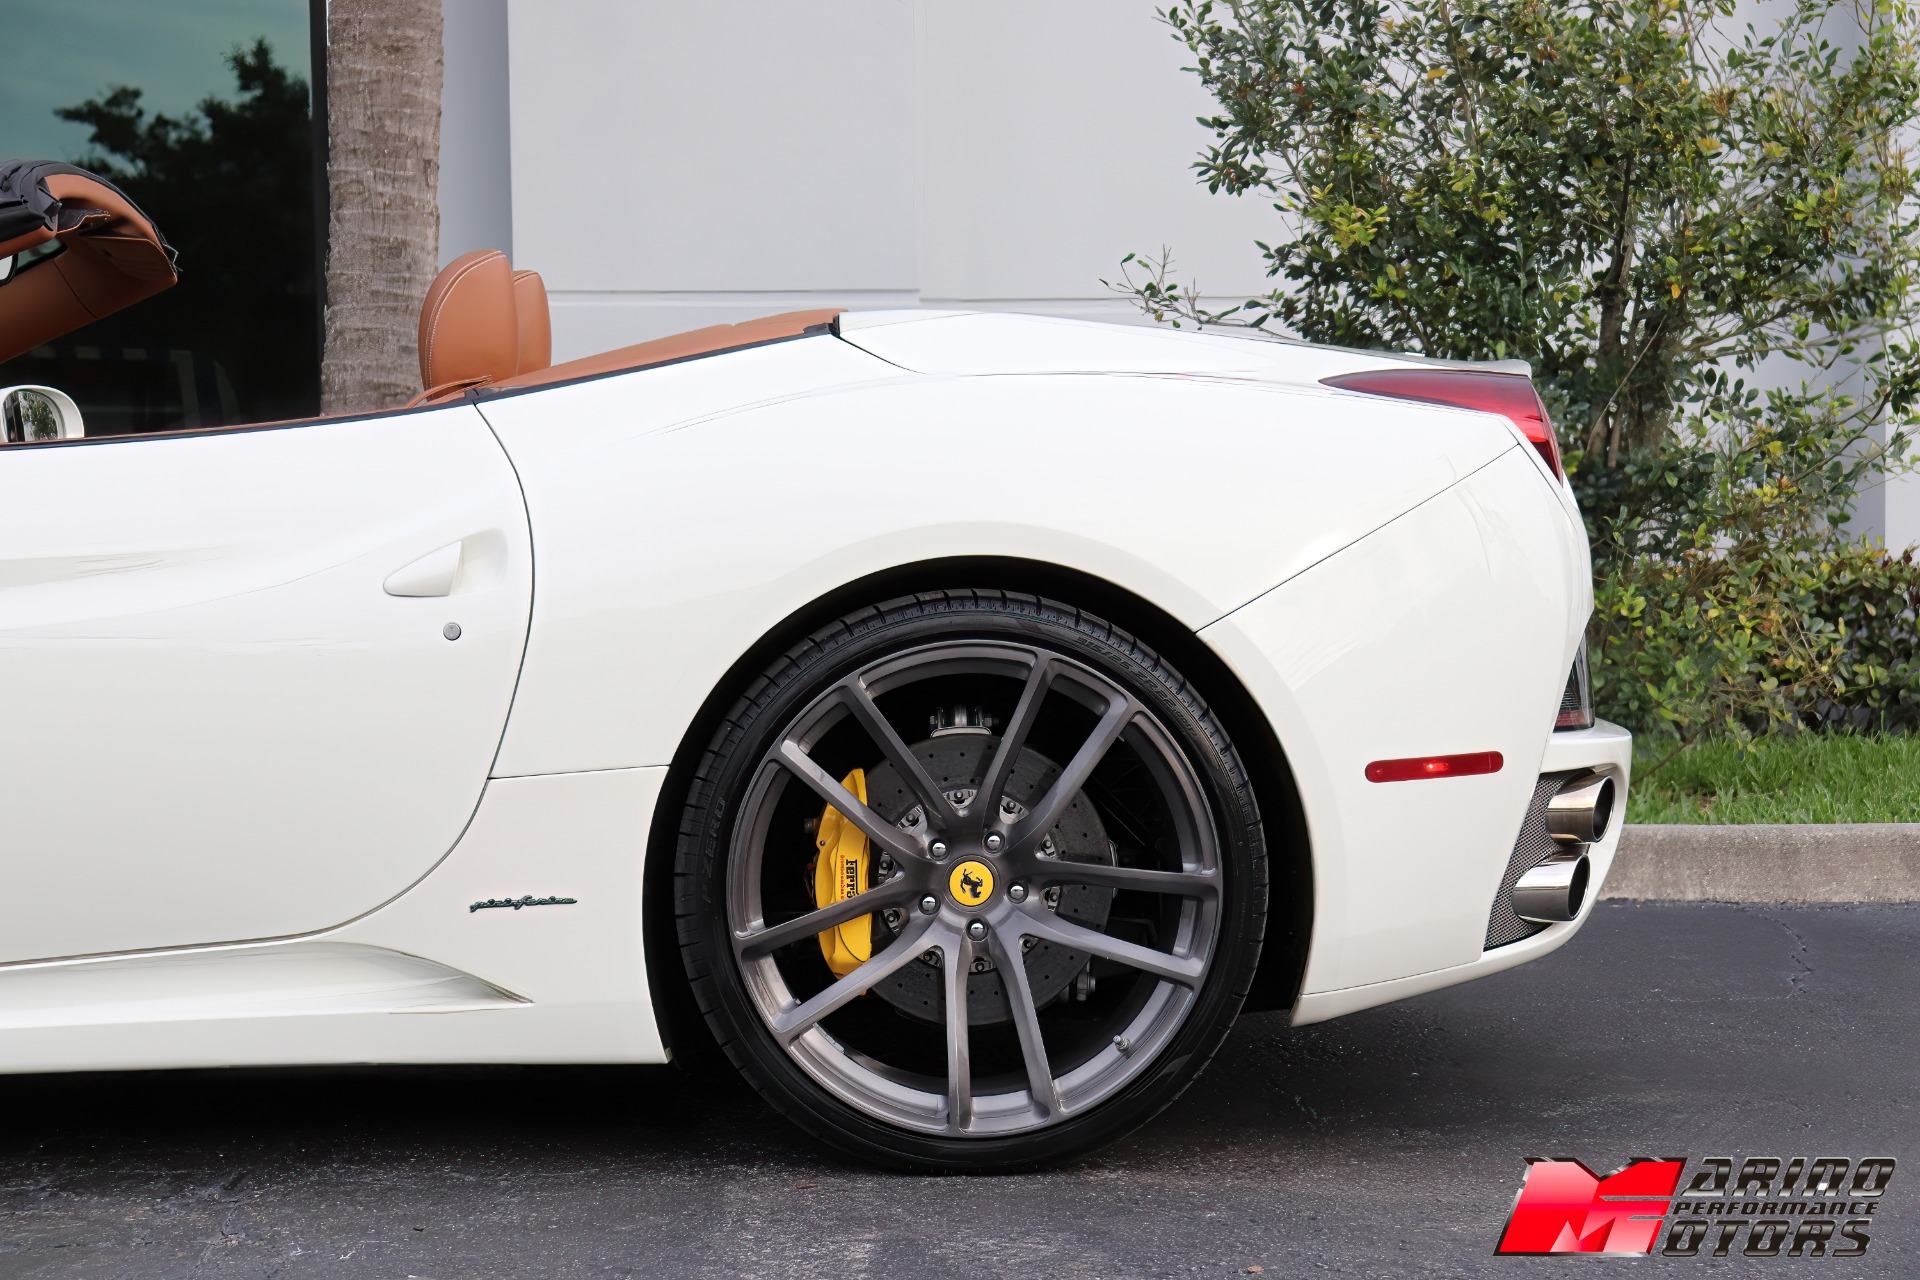 Used-2012-Ferrari-California